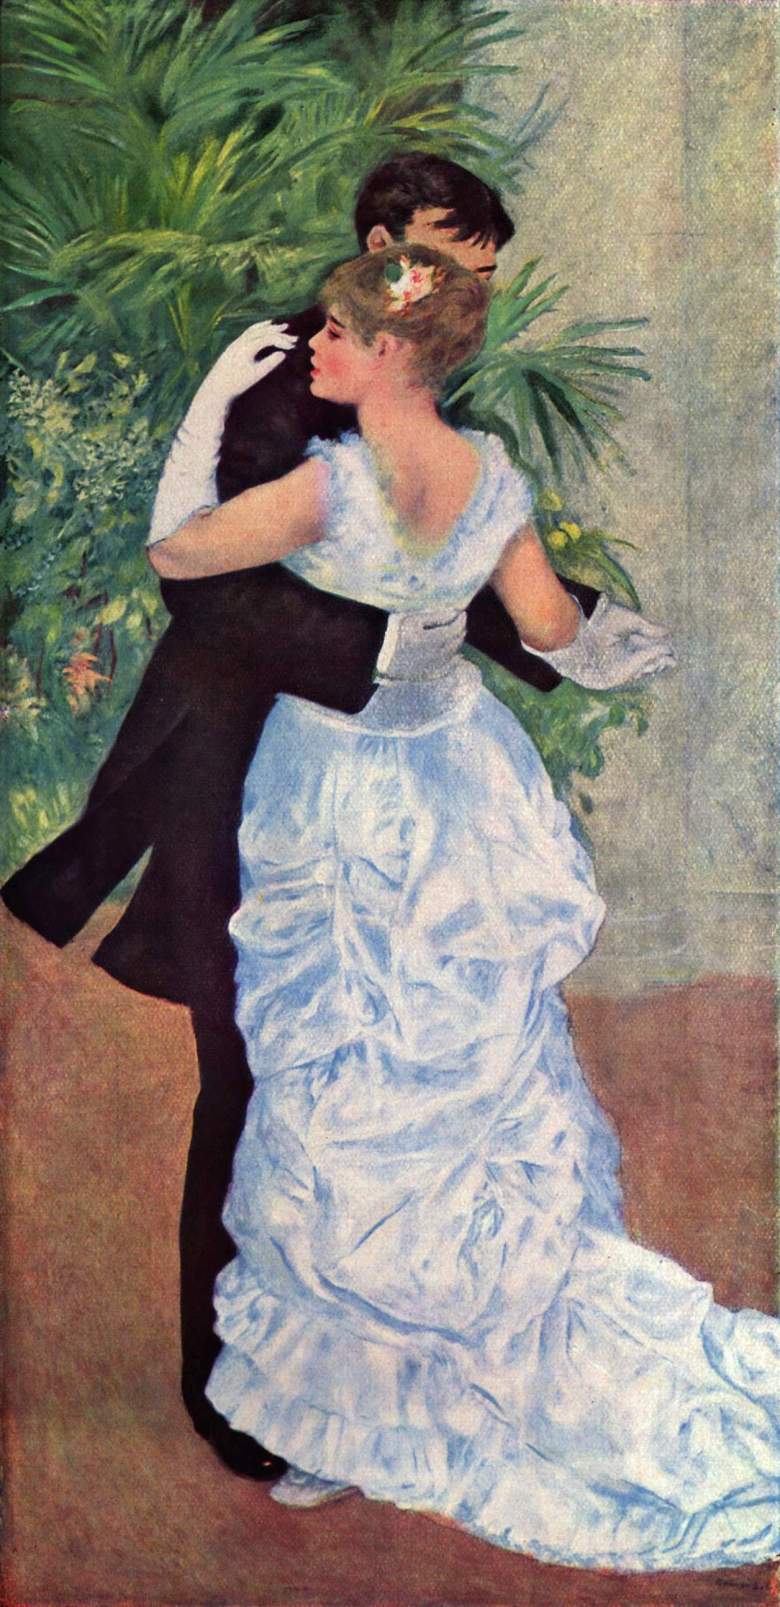 "Ο χορός στην πόλη" (1882-1883) του Pierre-Auguste Renoir. Παρίσι, Musée d'Orsay.